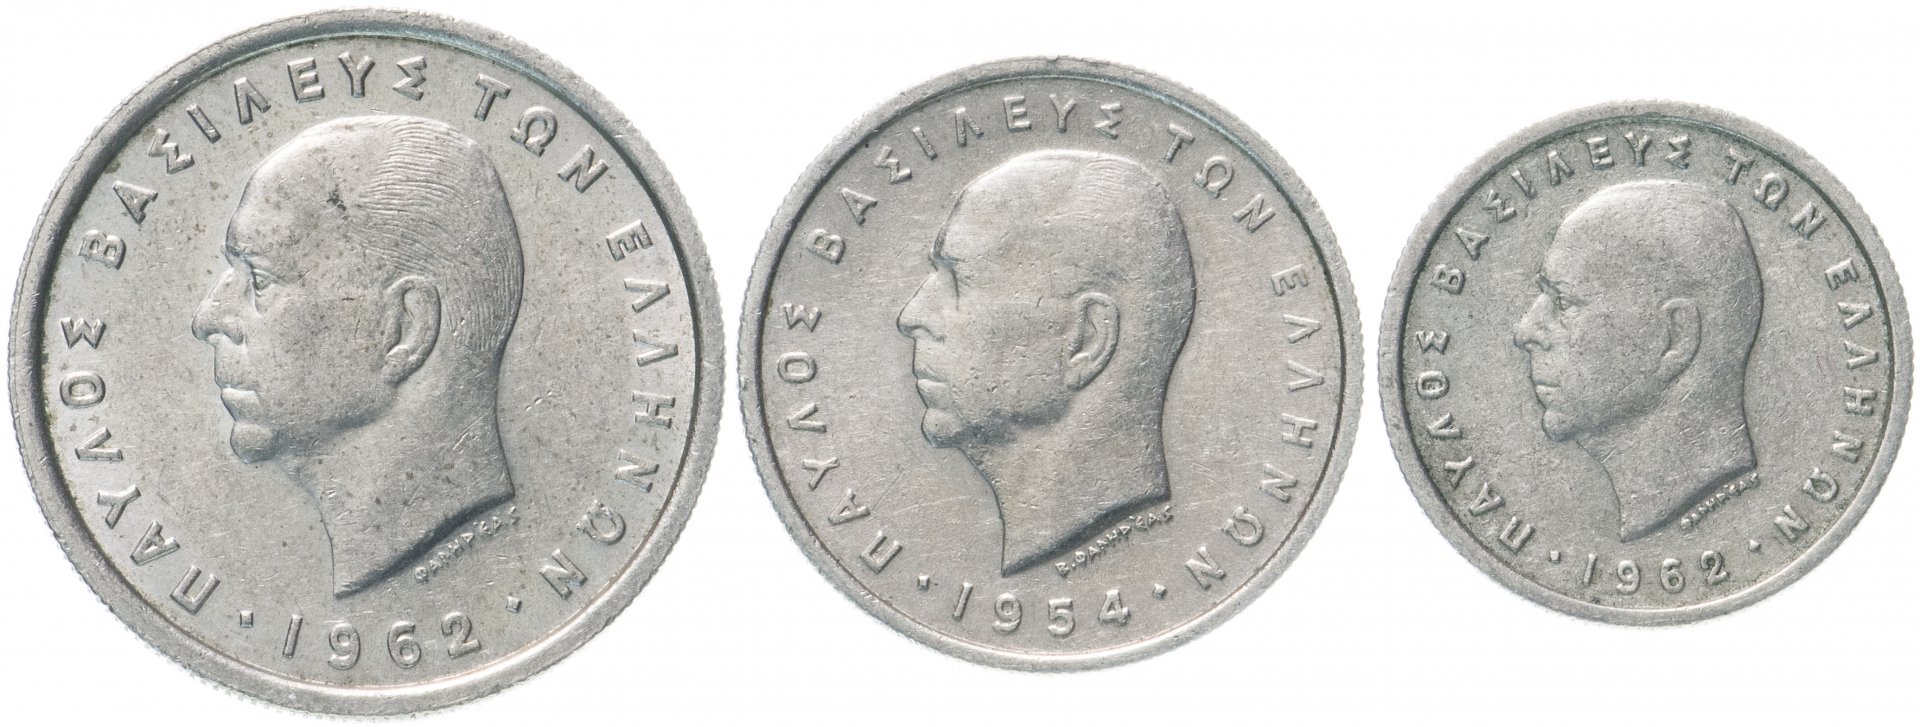 1954 Футбол монета. Набор Греция 1994-1999. 1954 Монетка семейная картинка. Монеты 1954 года стоимость